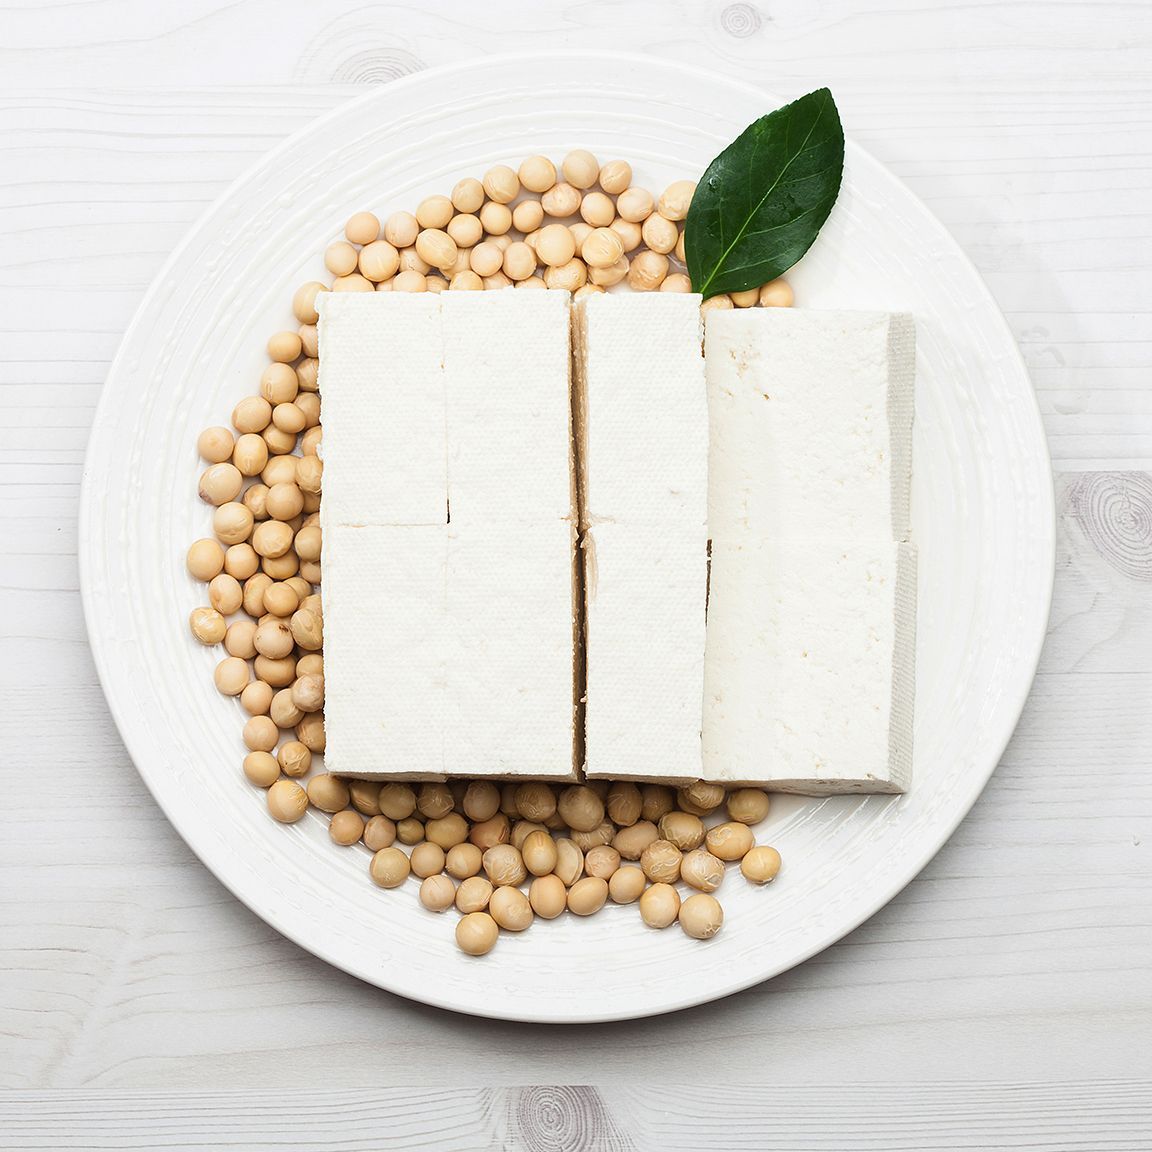 Tofu: Der Quark aus eingeweichten Sojabohnen ist der Klassiker unter den Fleischalternativen: vielseitig einsetzbar, neutral im Geschmack und in verschiedenen Sorten (geräuchert, mariniert oder gewürzt) erhältlich.  